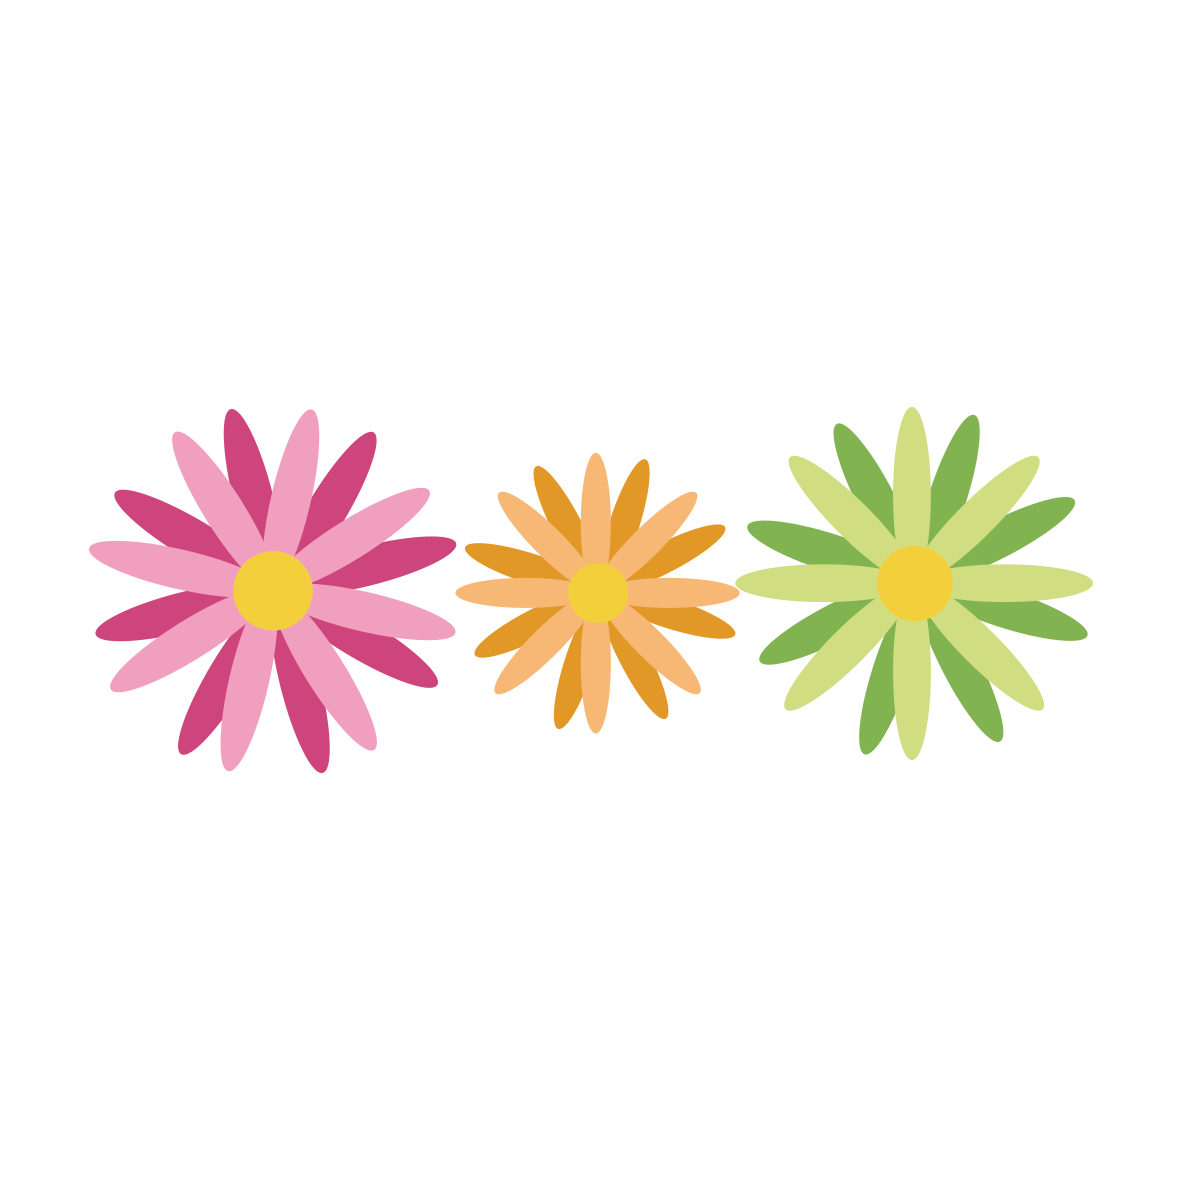 ピンク・緑・オレンジなど、色とりどりのお花が素敵でポップなイラスト線です。
いくつか並べれば長いテキストを飾ることもできます☆<br>
春らしいカラーなので、入園・入学の時期のお便りに華を添えるにはピッタリのイラストです。<br>
イラストAiのイラスト素材は、全て登録不要・無料・商用利用OKです。是非役立ててくださいね♪